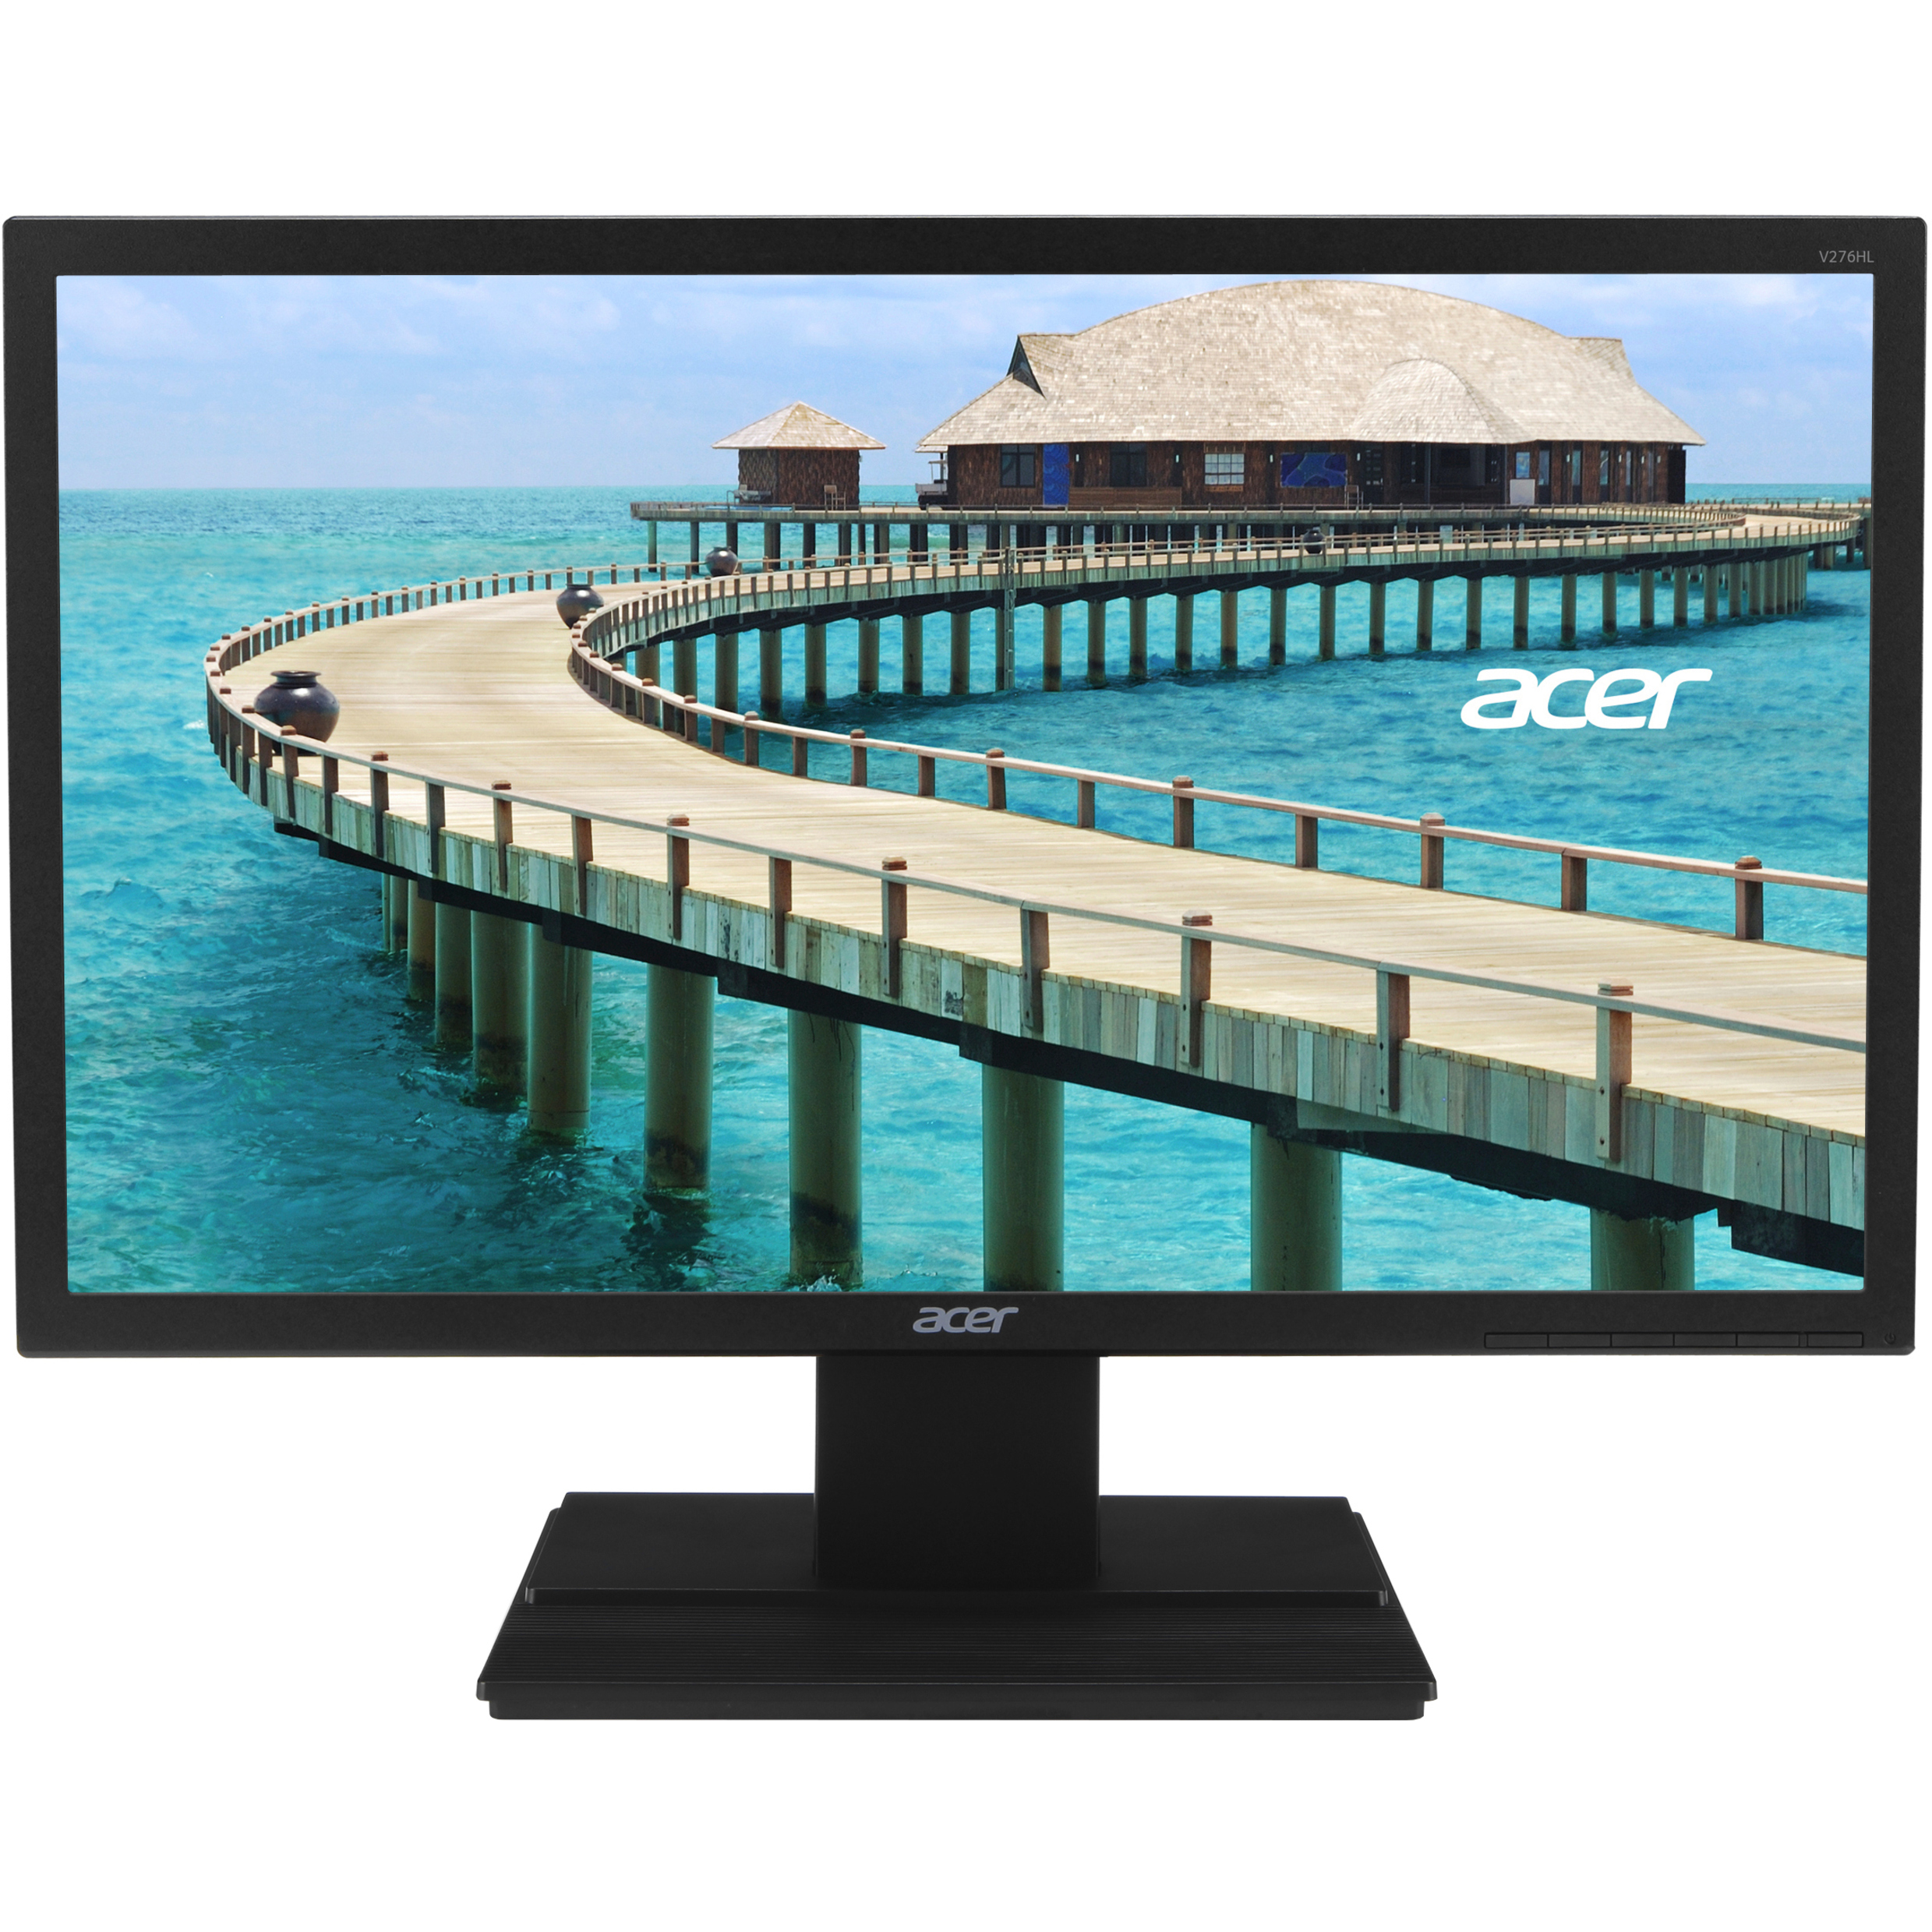 Acer V276HL 27" Class Full HD LCD Monitor, 16:9, Black - image 1 of 5